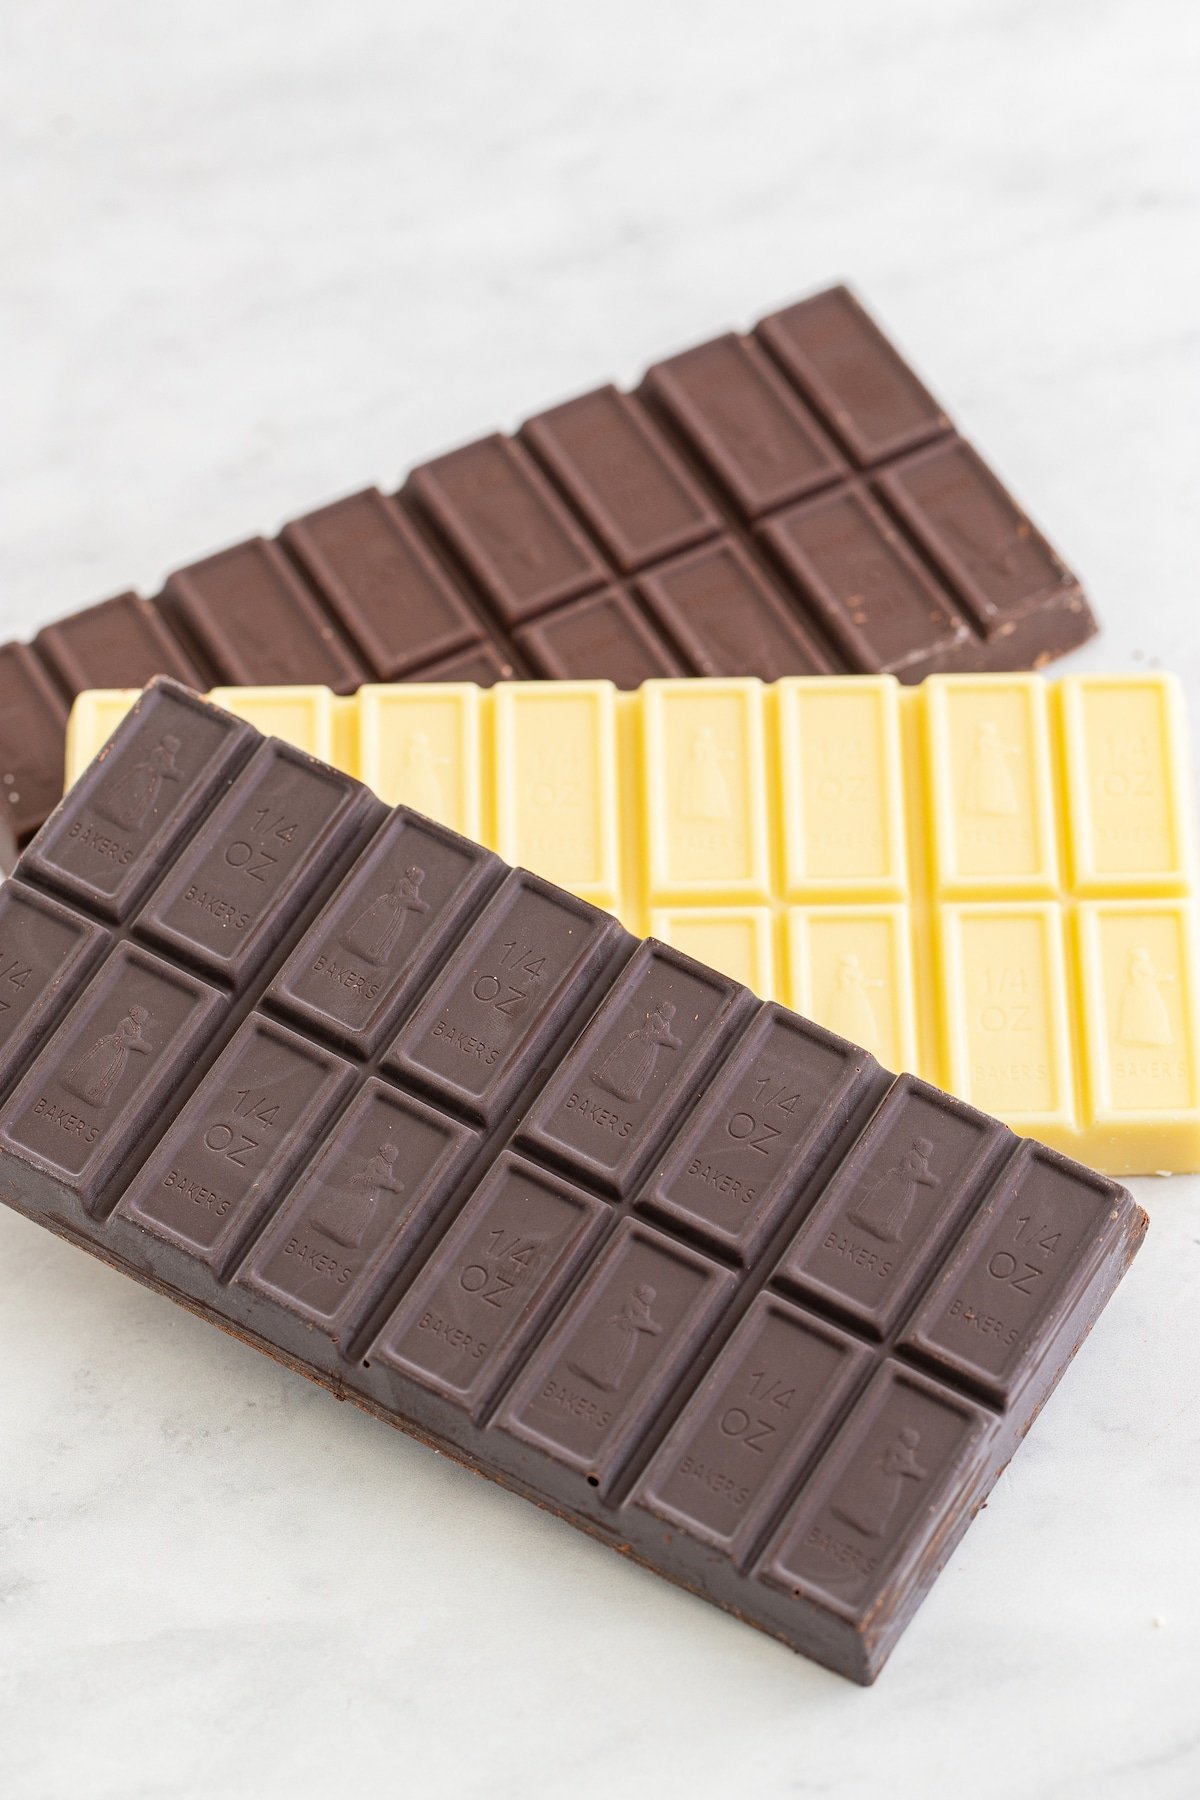 dark chocolate semi sweet and white chocolate baking bars